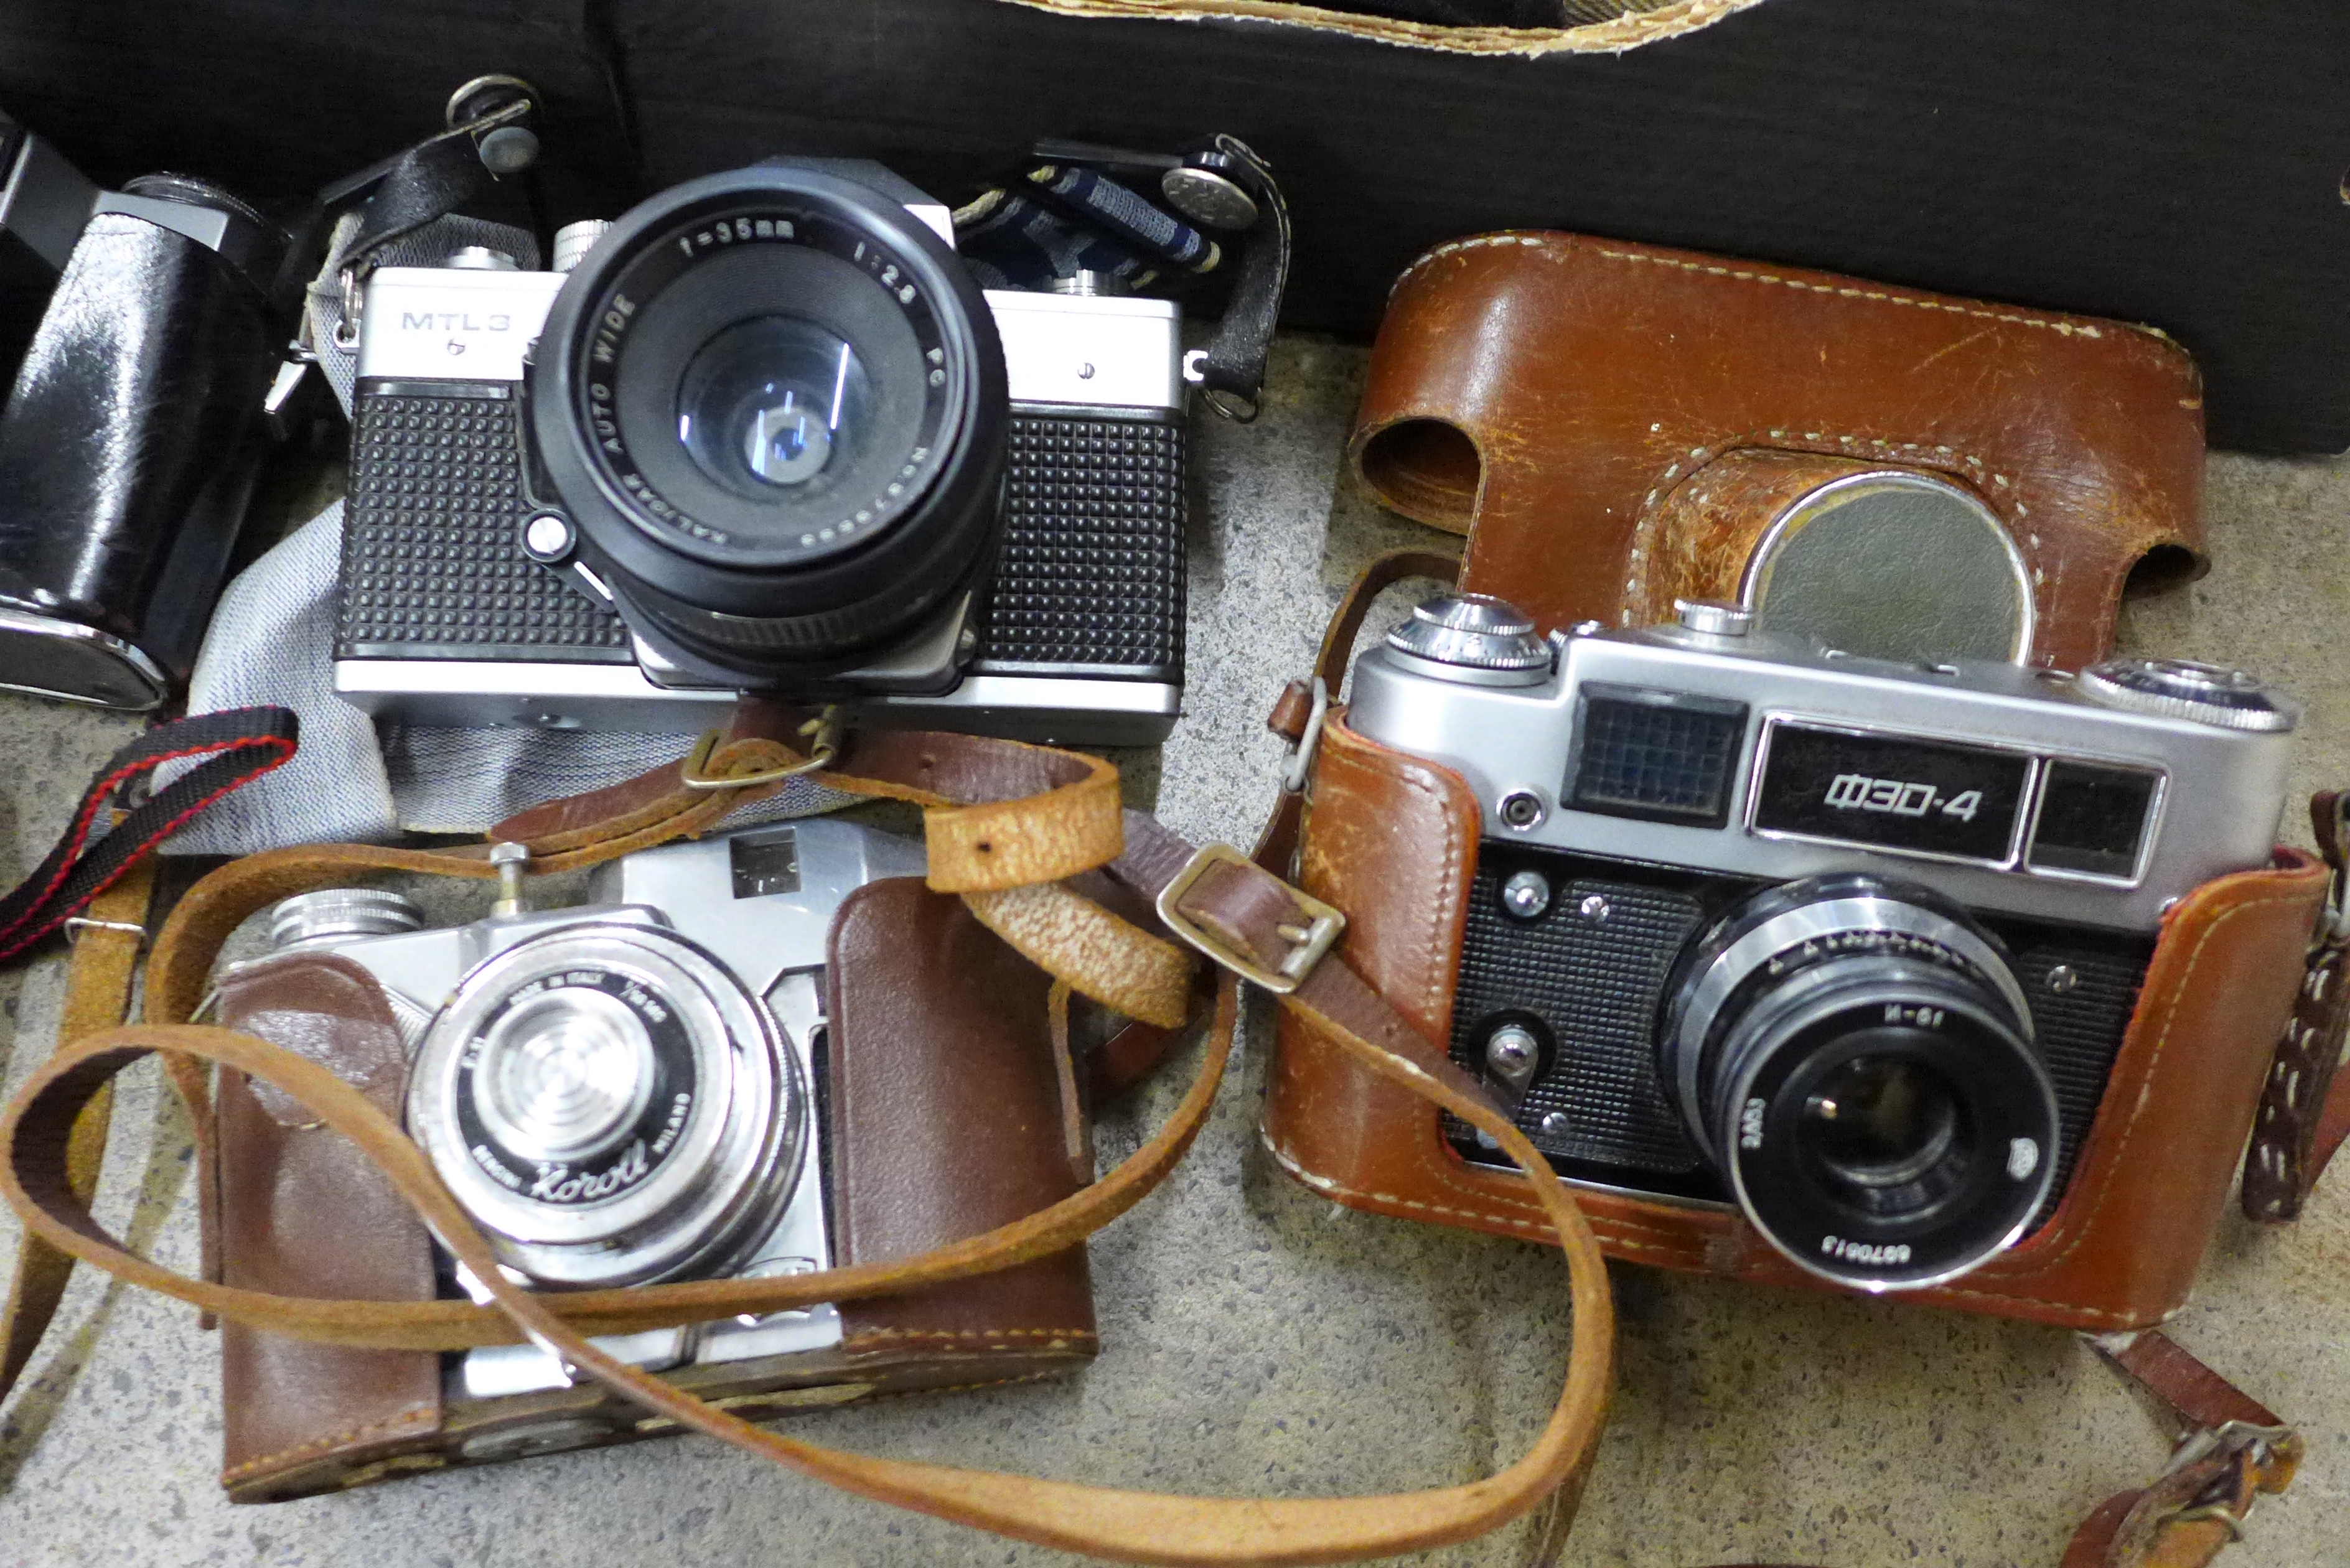 Vintage cameras including Praktica, Zenit, etc. - Image 2 of 4